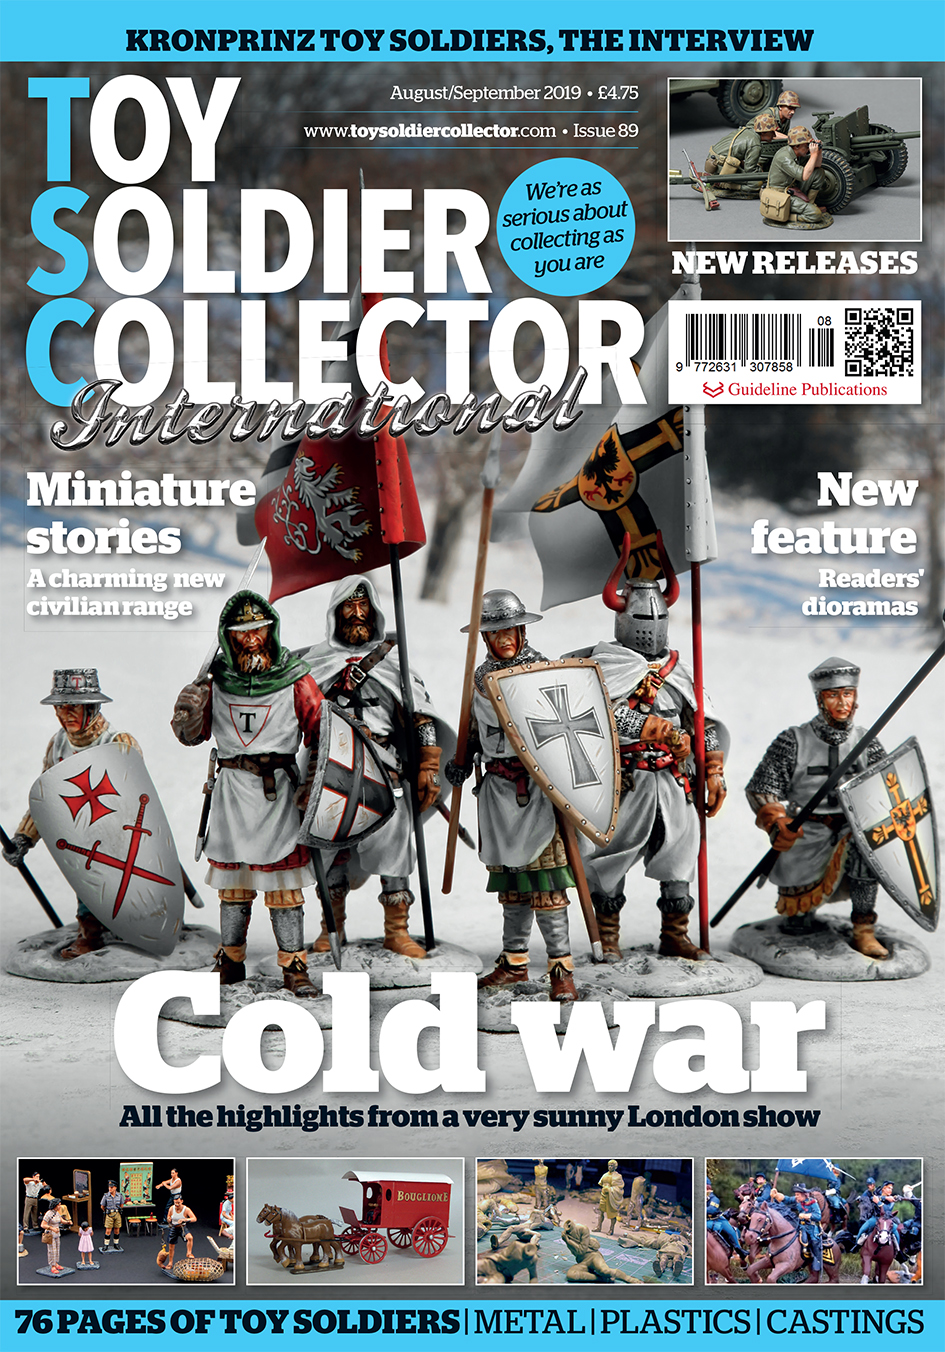 Toy soldier Collector Magazine 96 octobre/novembre 2020 Neuf 